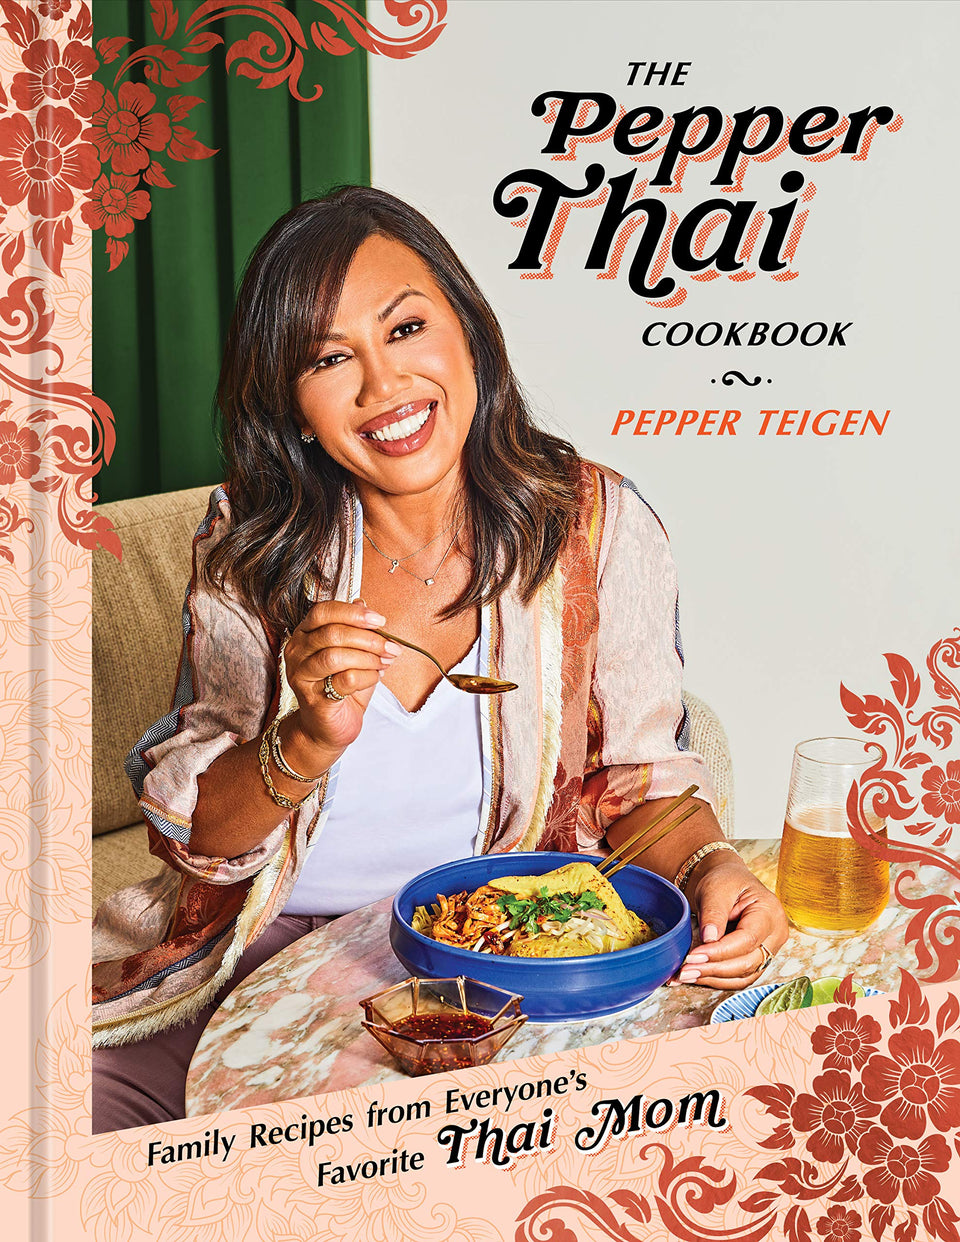 The Pepper Thai Cookbook: Pepper Teigen